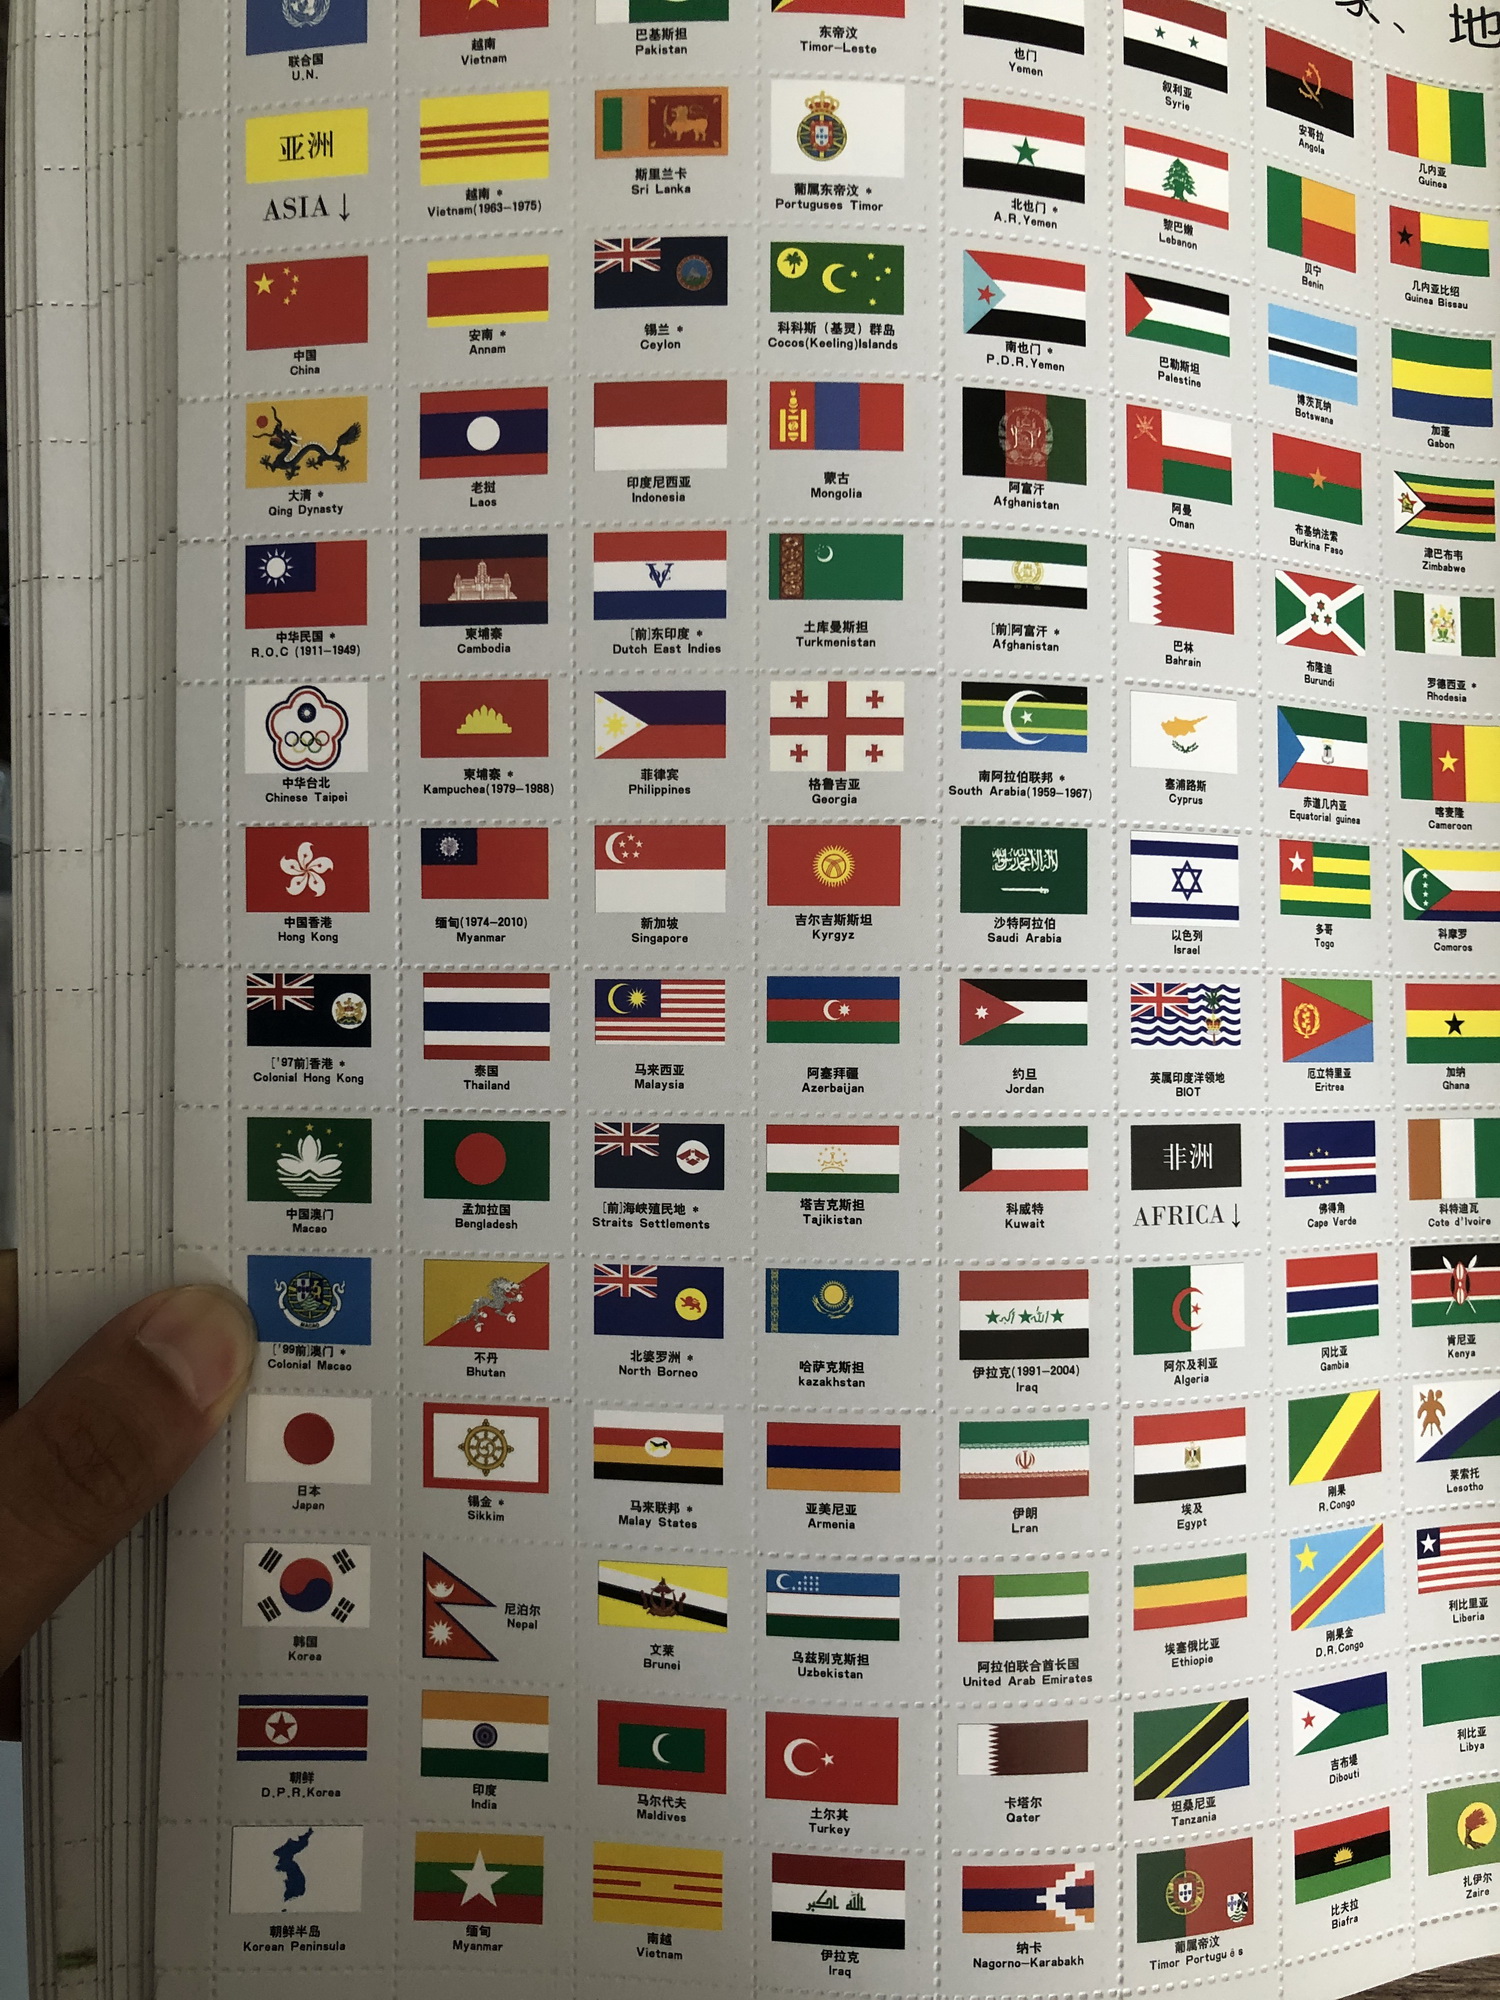 Bộ cờ quốc kỳ các nước và tiểu bang Mỹ sẽ là món đồ chơi giáo dục thú vị cho trẻ em. Với thiết kế đặc trưng của từng quốc gia, bộ cờ này sẽ giúp các em học được ý nghĩa và lịch sử của các quốc kỳ. Chúng tôi cam kết về chất lượng sản phẩm để đem lại trải nghiệm tuyệt vời cho bạn.